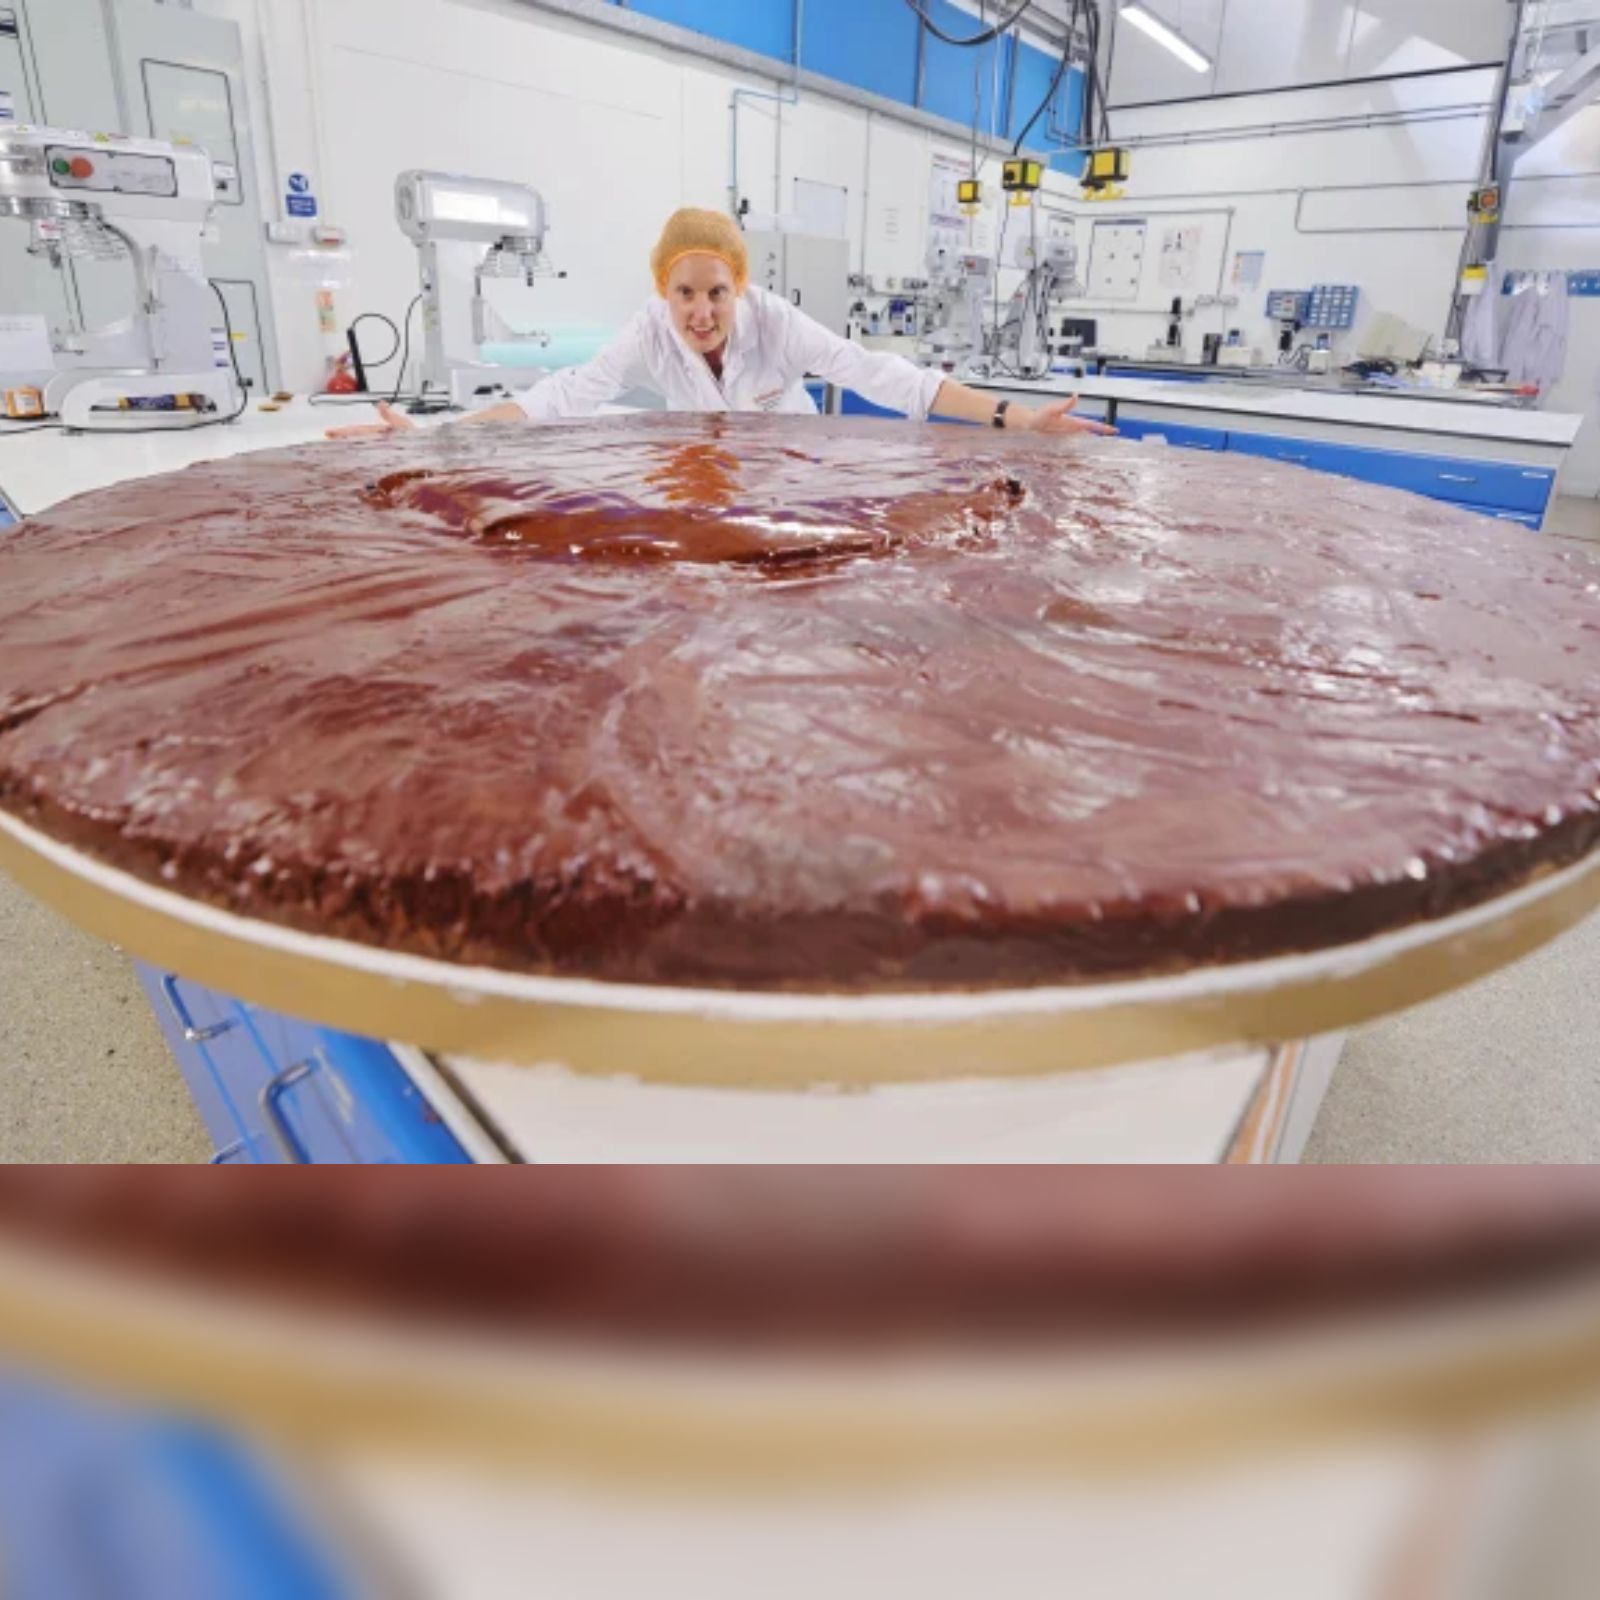 मोदी स्‍पेशल बर्थडे केक तोड़ेगा रिकॉर्ड, वजन है 3,750 किग्रा -